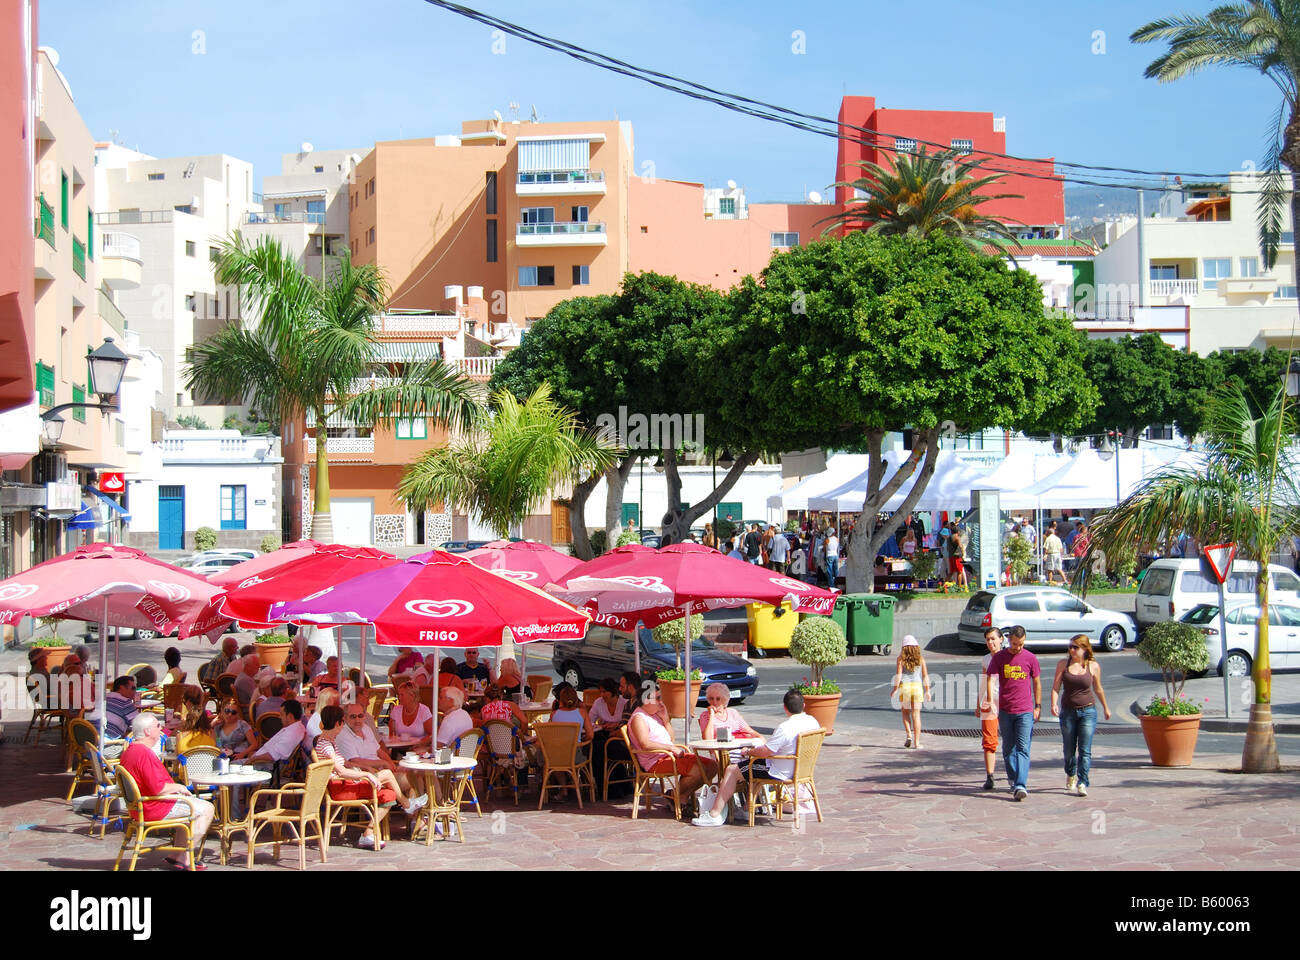 Outdoor-Markt und Restaurant, Calle De La Plaza, Alcala, Teneriffa, Kanarische Inseln, Spanien Stockfoto